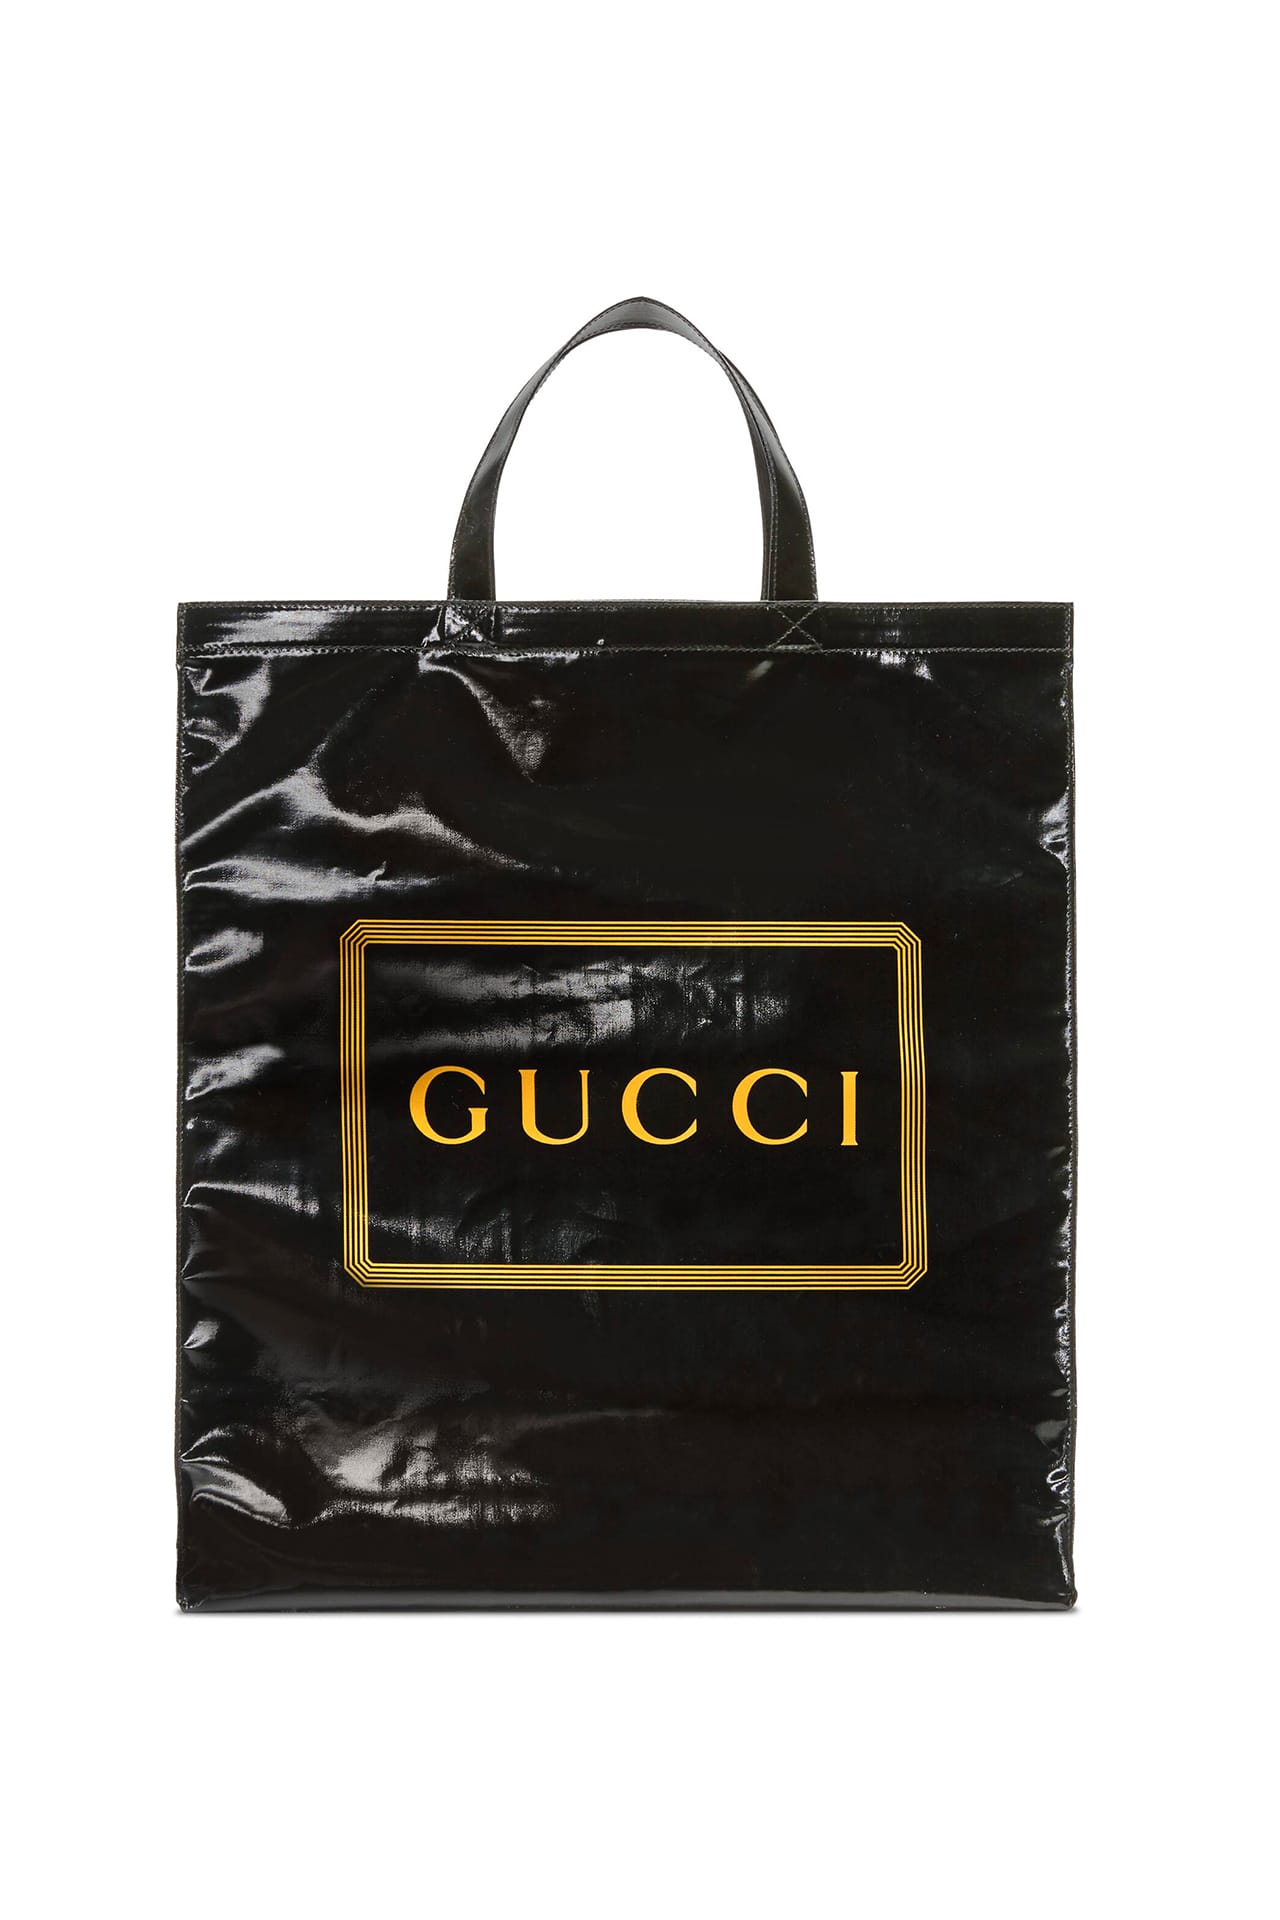 gucci mens carry bag